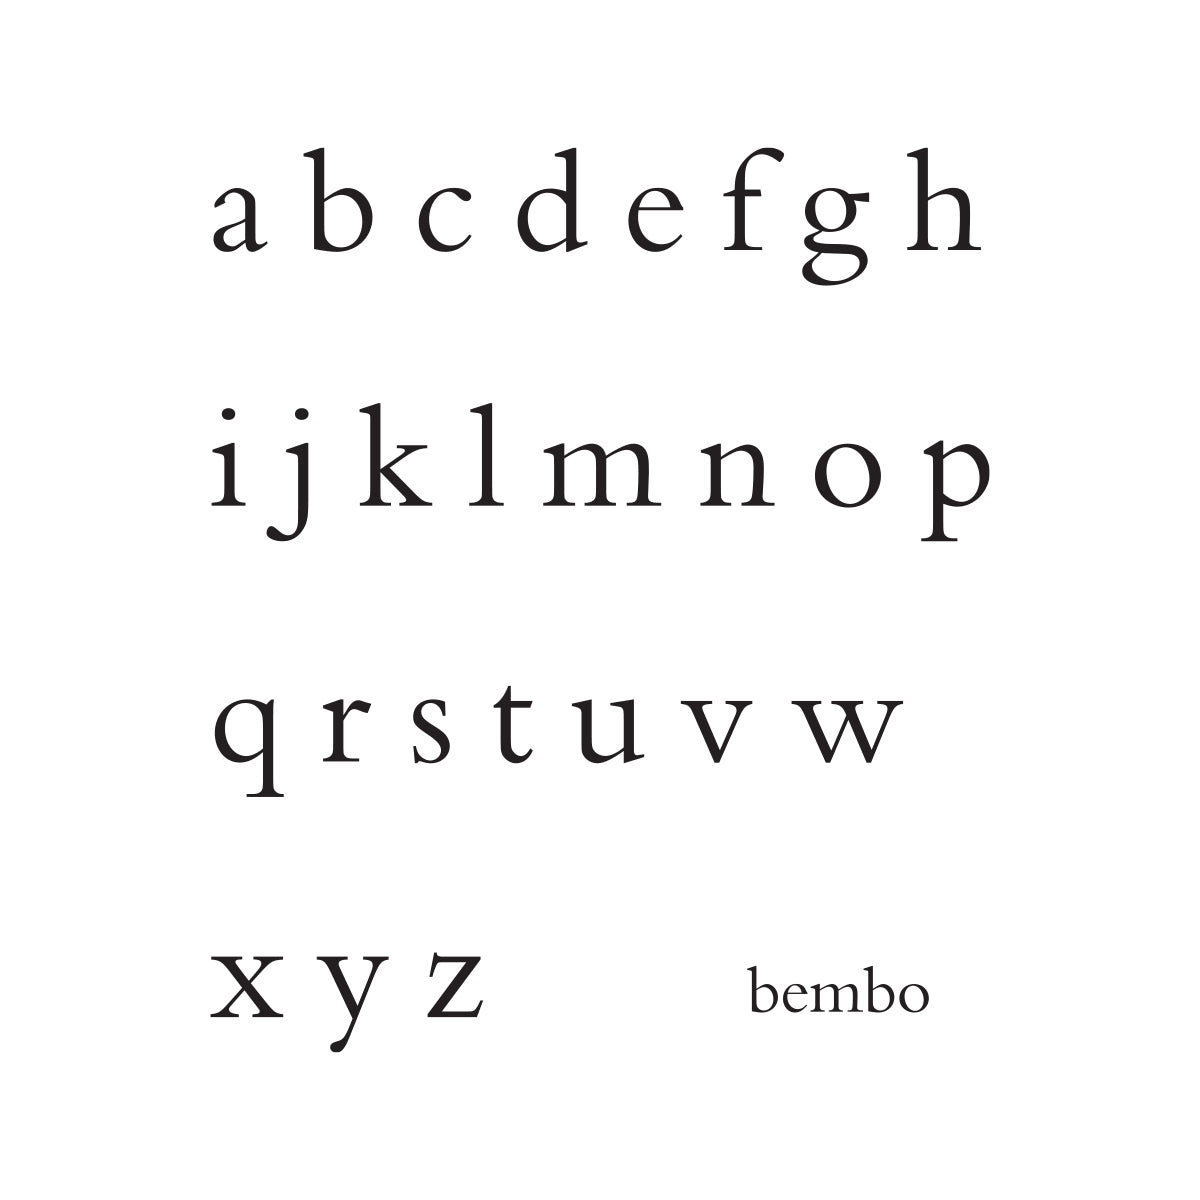 Bembo Written Number Block.